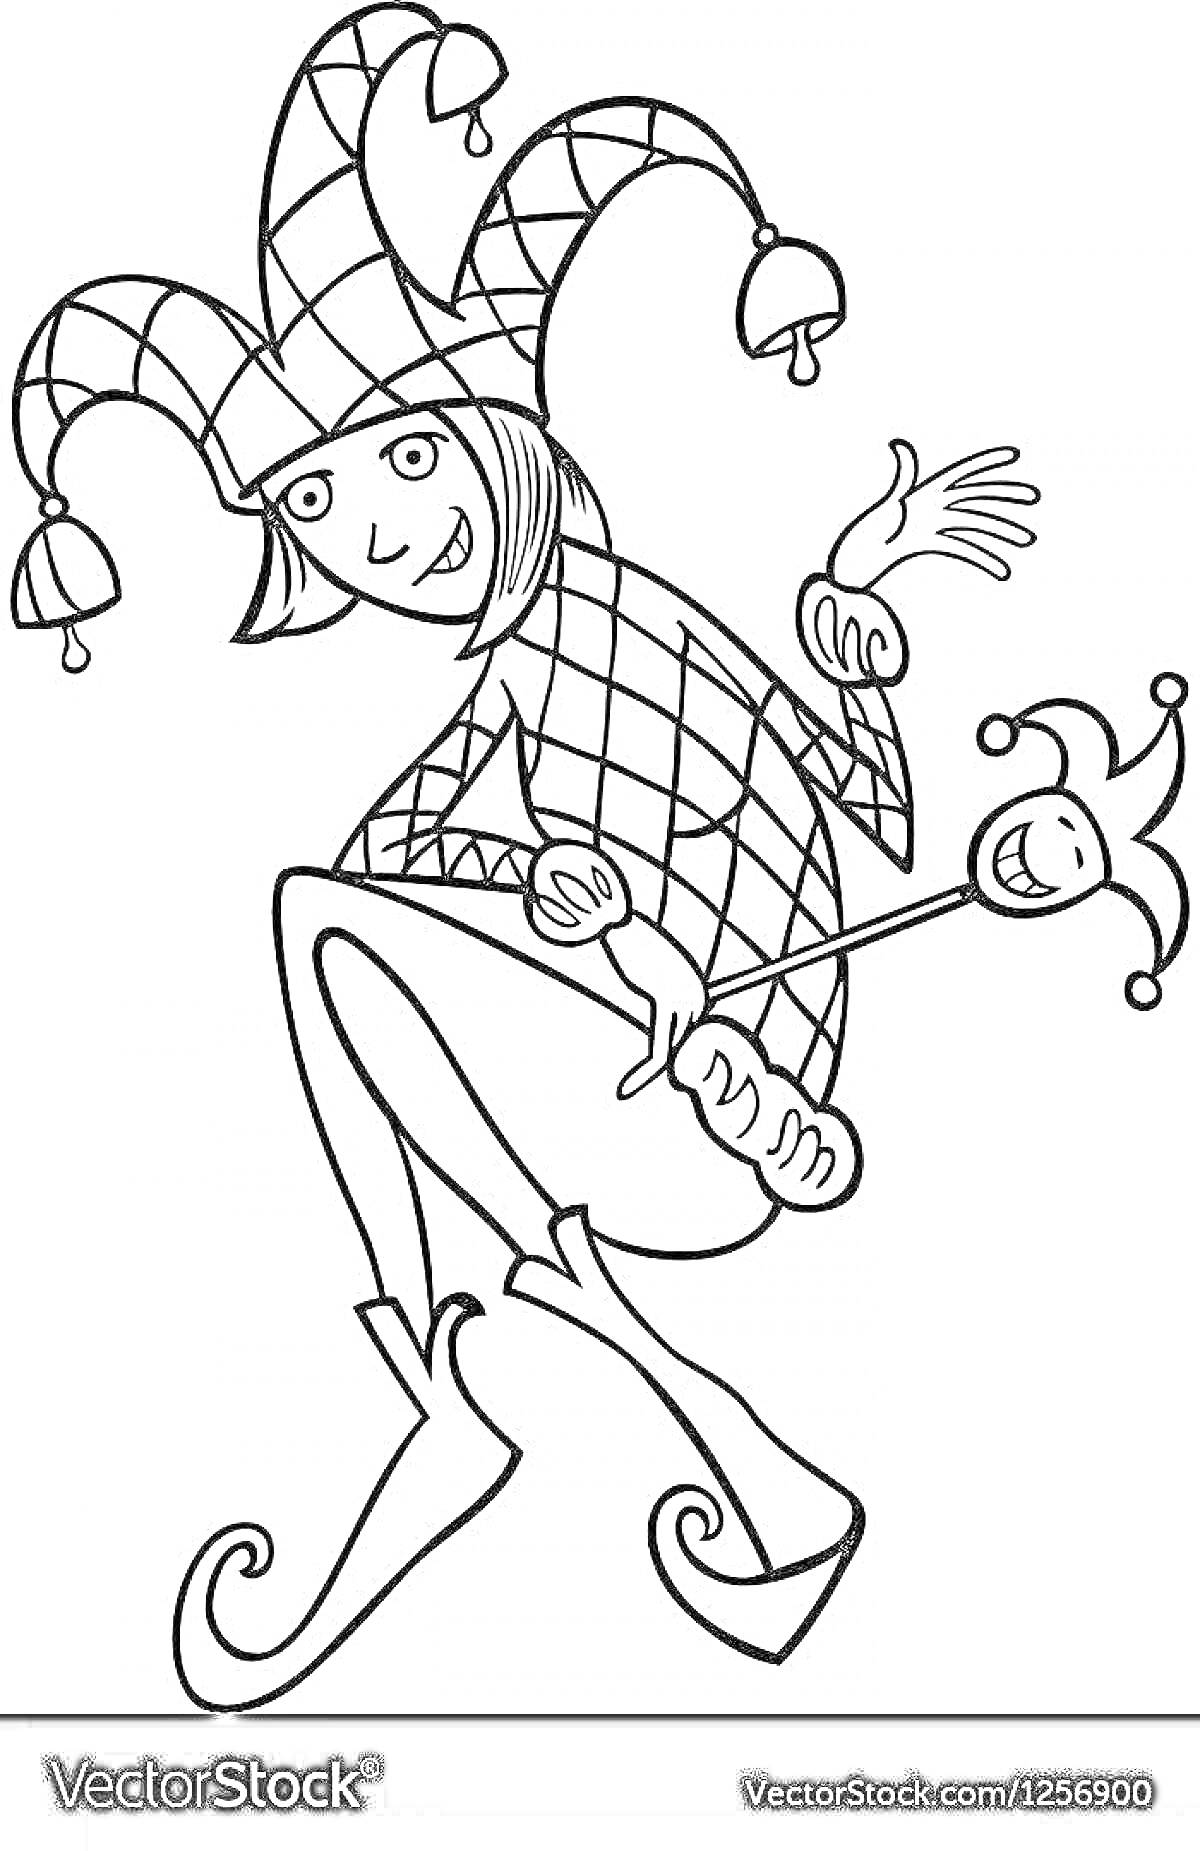 Раскраска Шут в шапке с колокольчиками и маской в руке